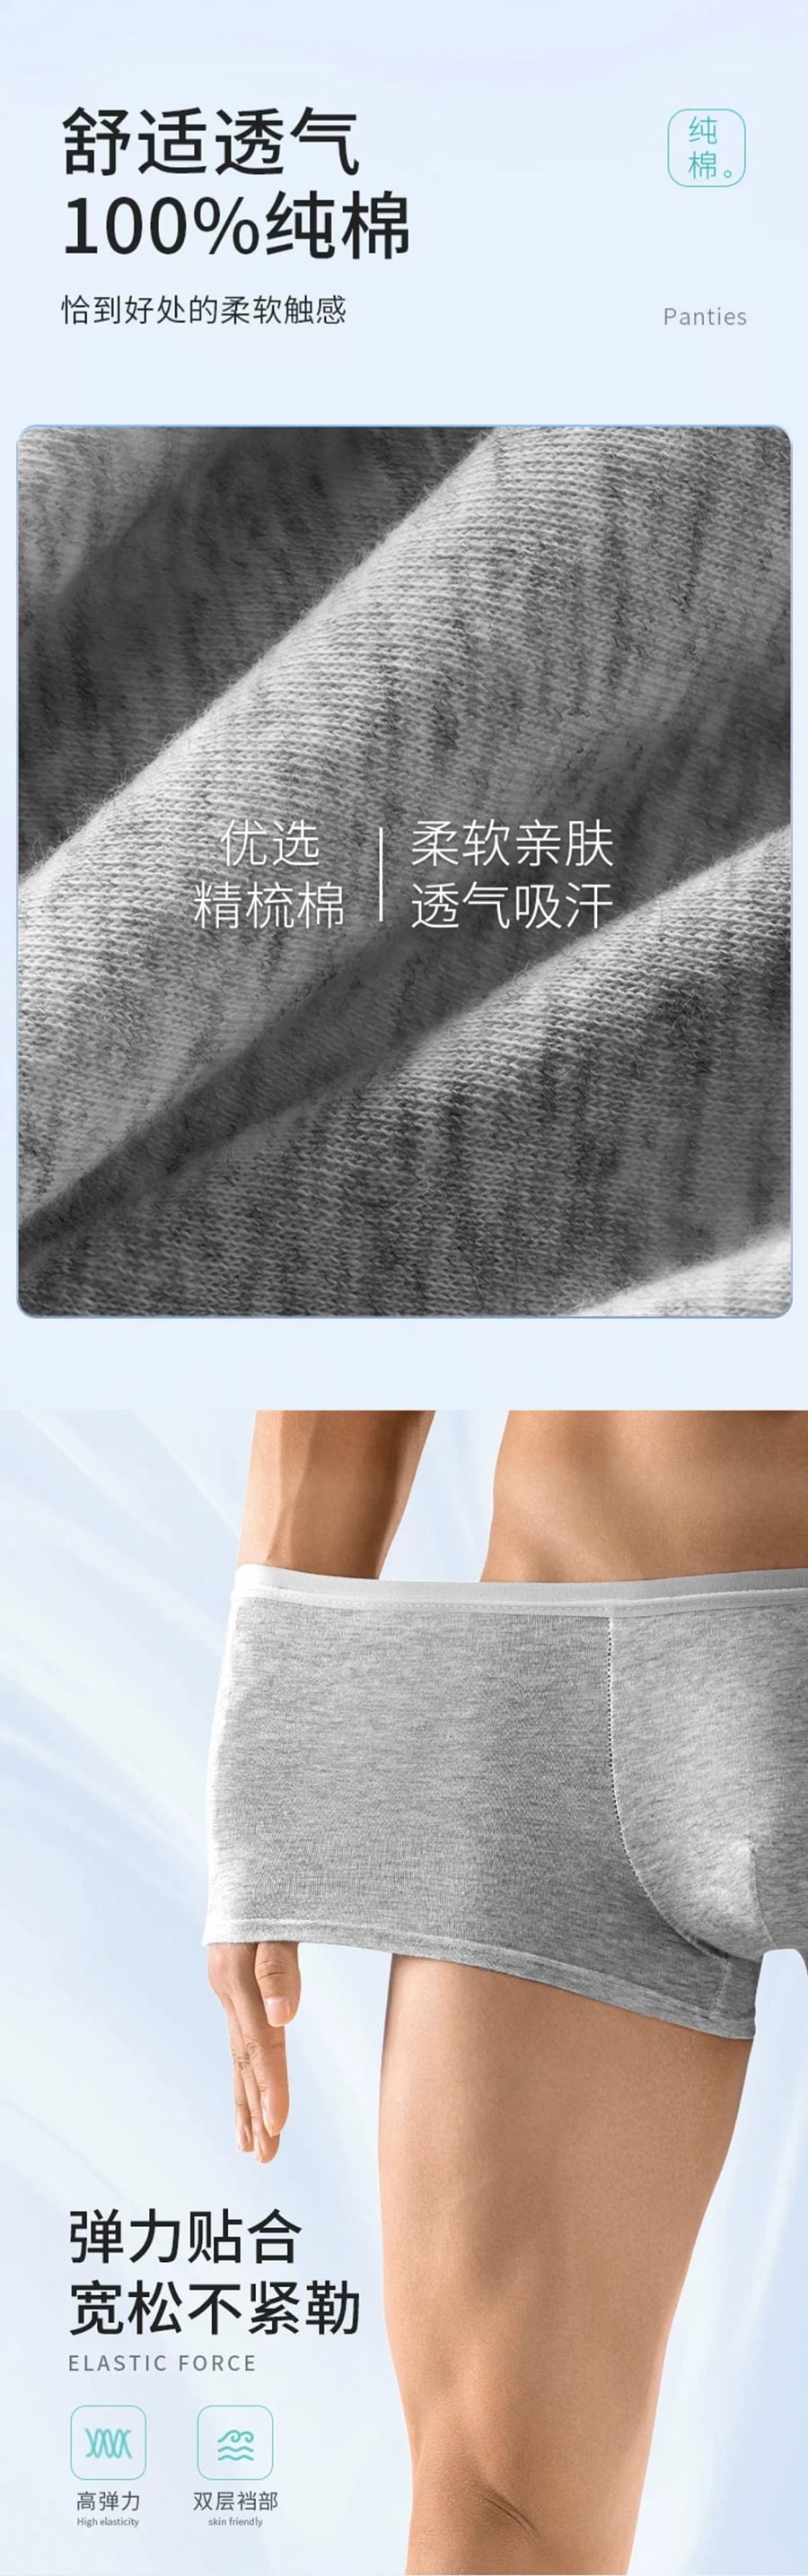 歐億姿 方便舒適一次性男性內褲 灰色 XXL 3條裝無需清洗 不僅僅是方便